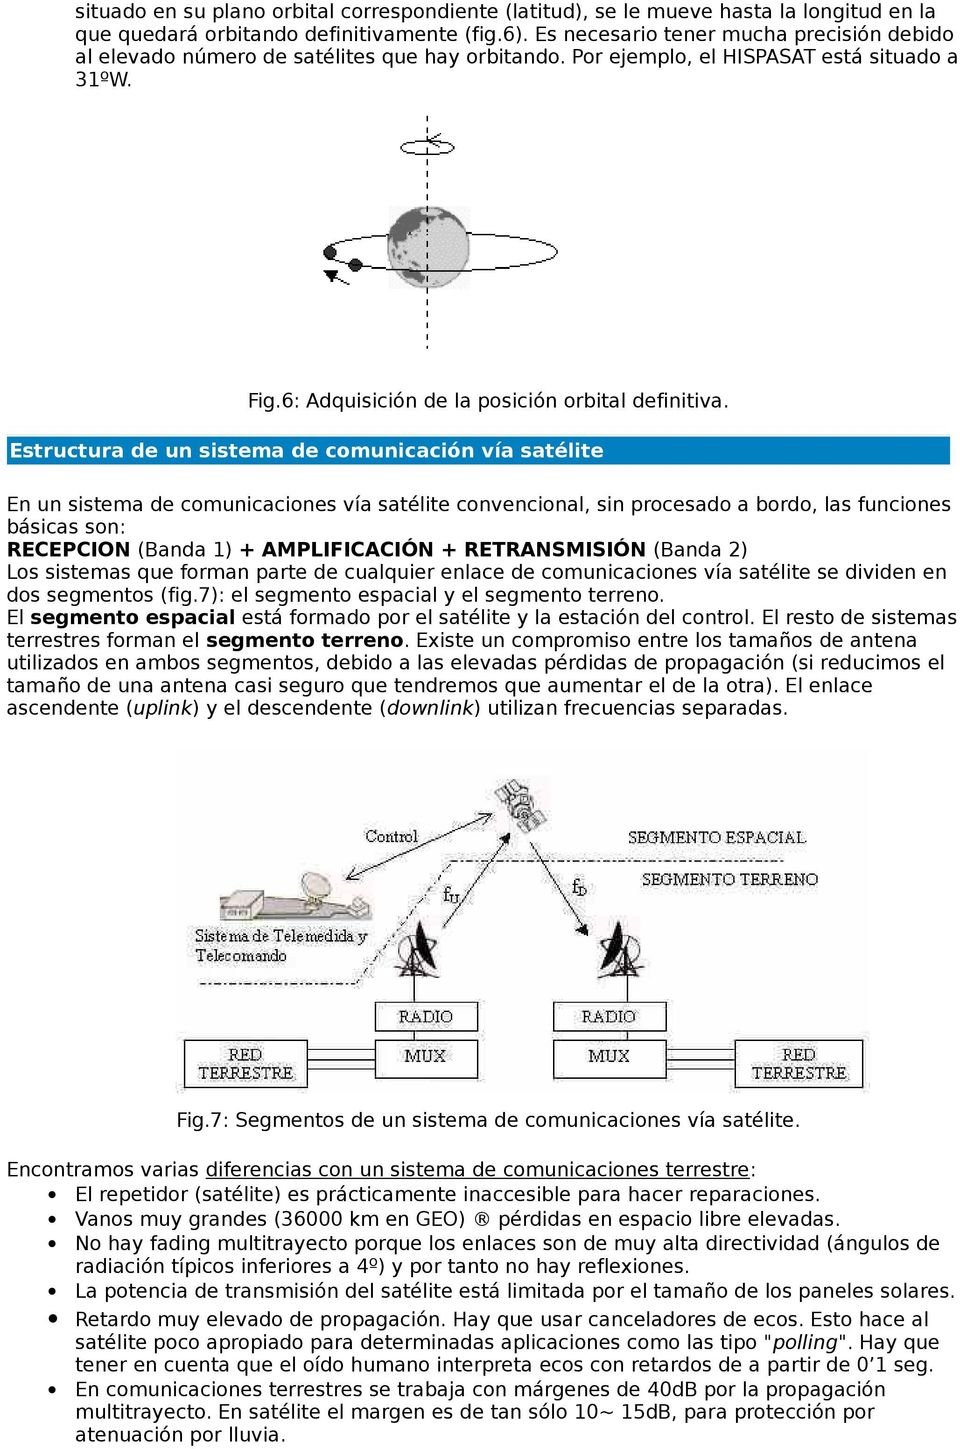 Estructura de un sistema de comunicación vía satélite En un sistema de comunicaciones vía satélite convencional, sin procesado a bordo, las funciones básicas son: RECEPCION (Banda 1) + AMPLIFICACIÓN